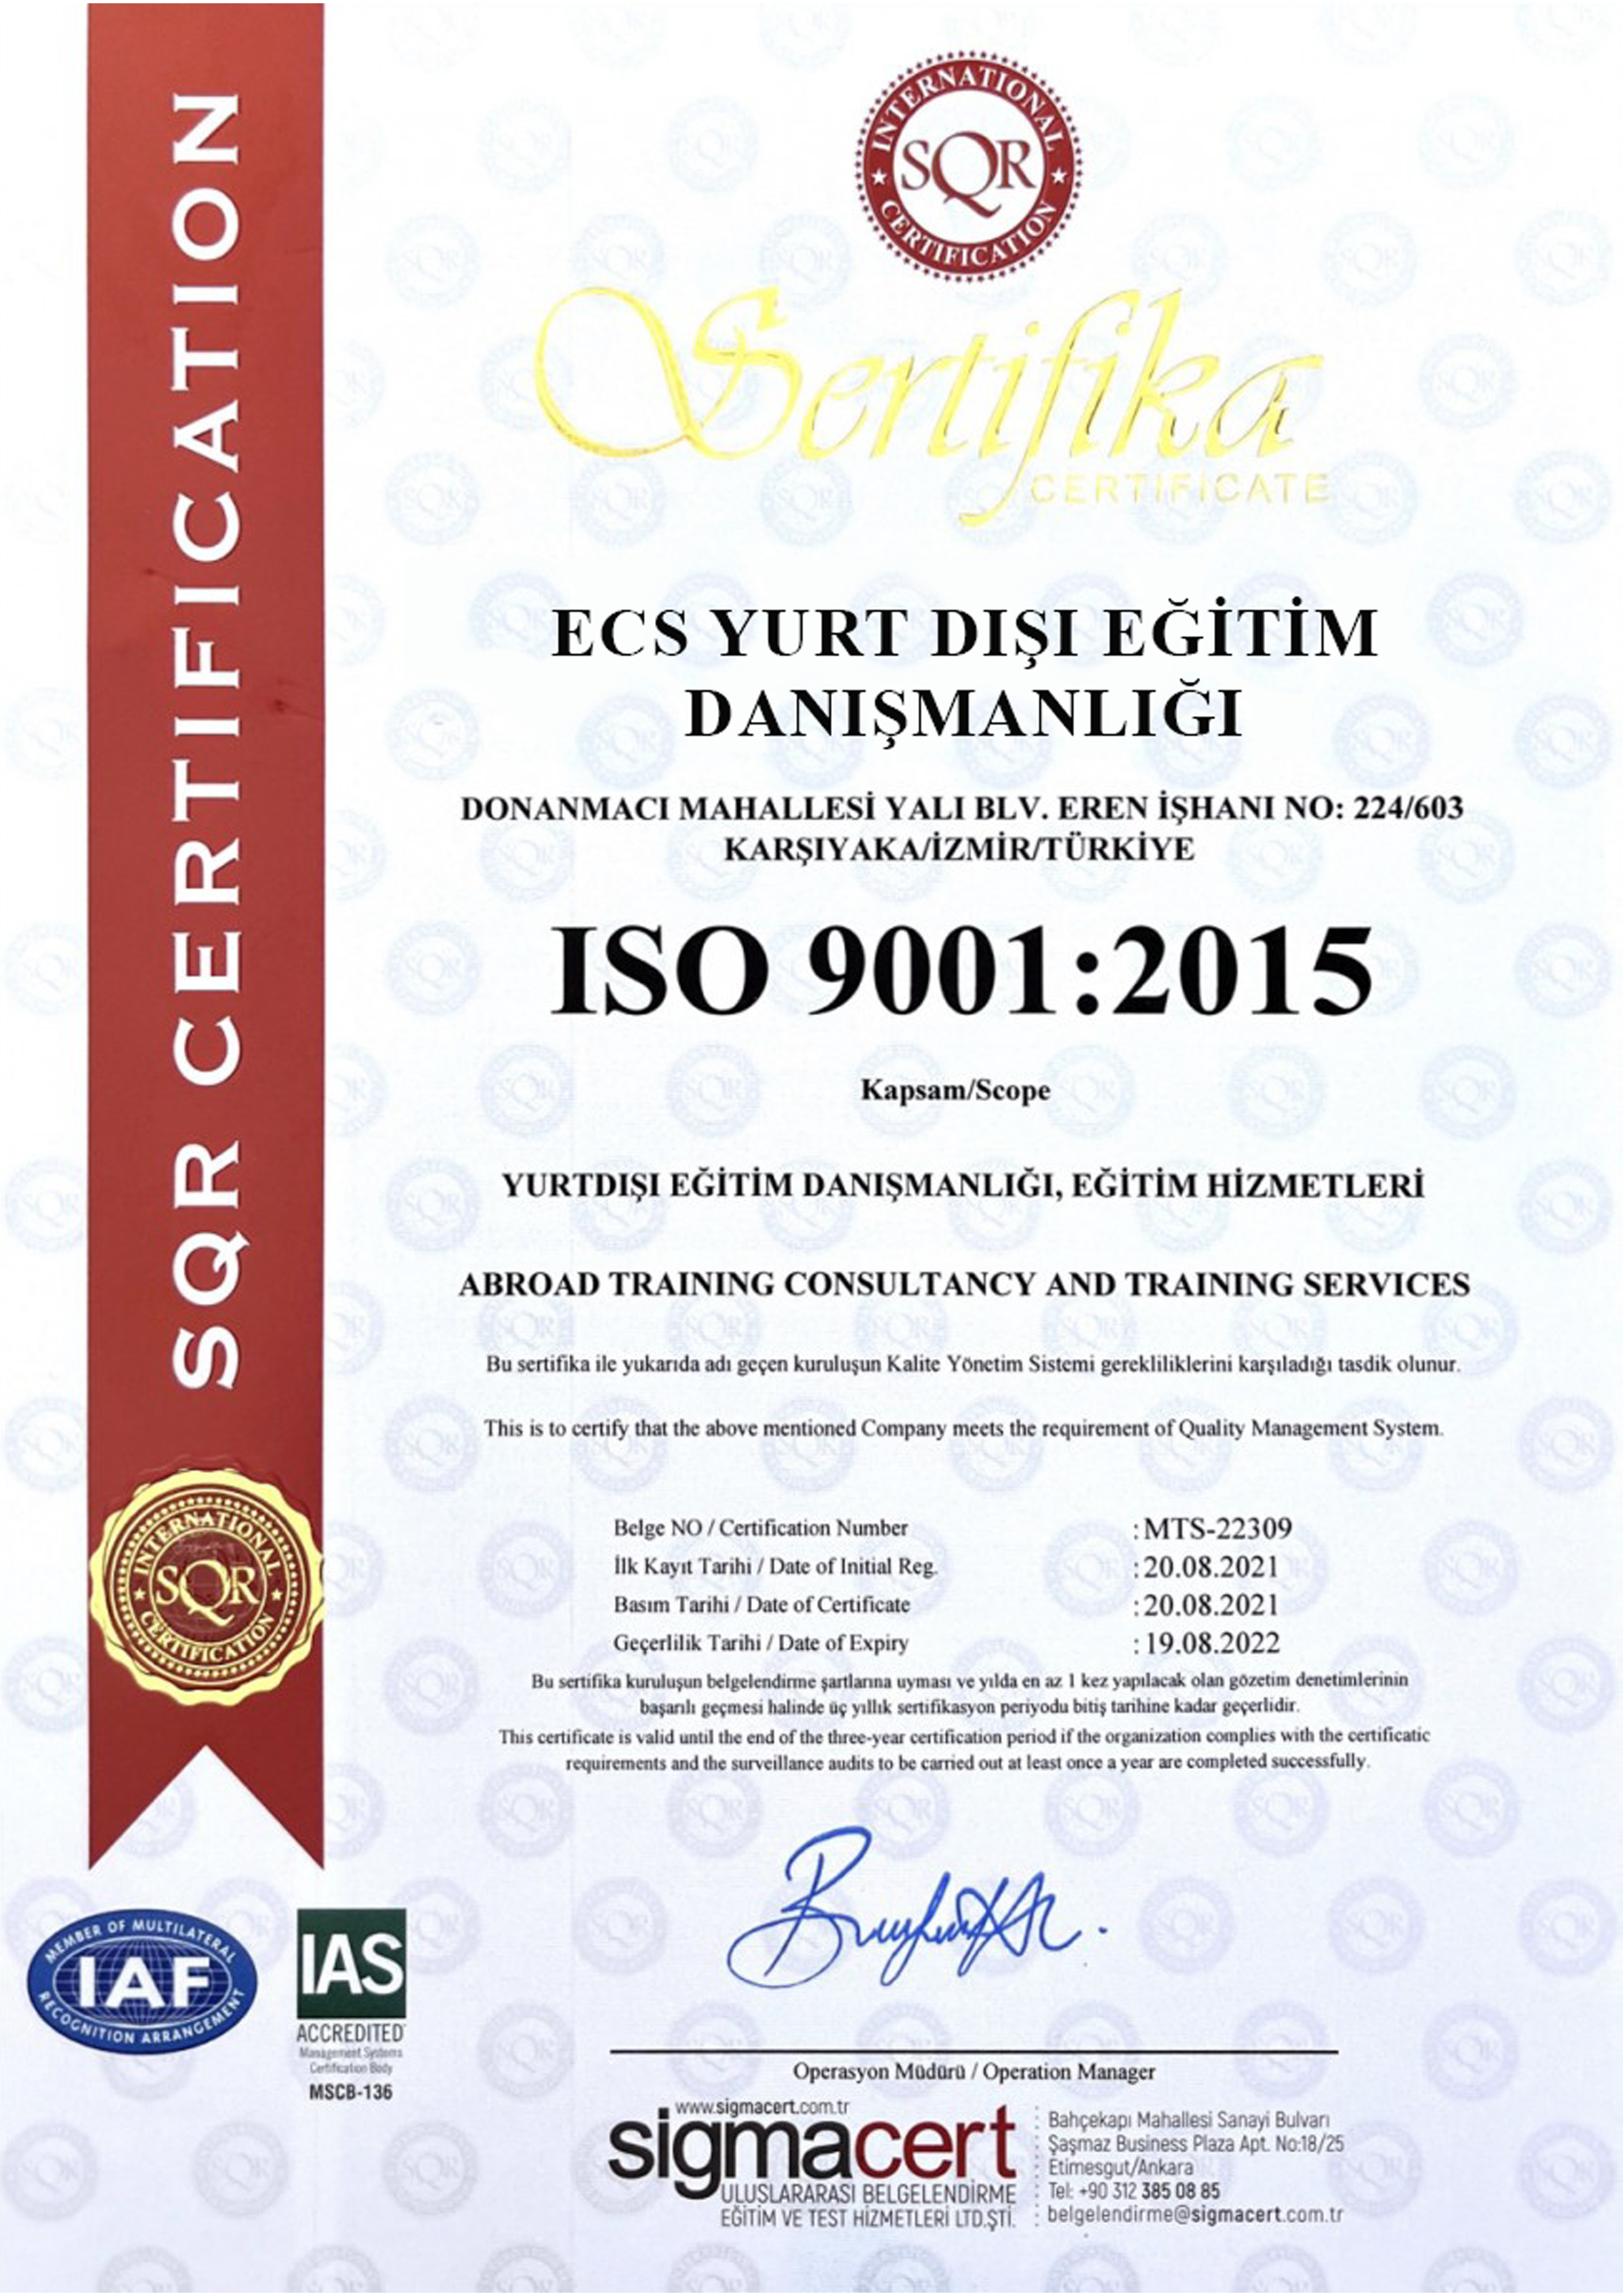 ISO 9001:2015 BELGESİ